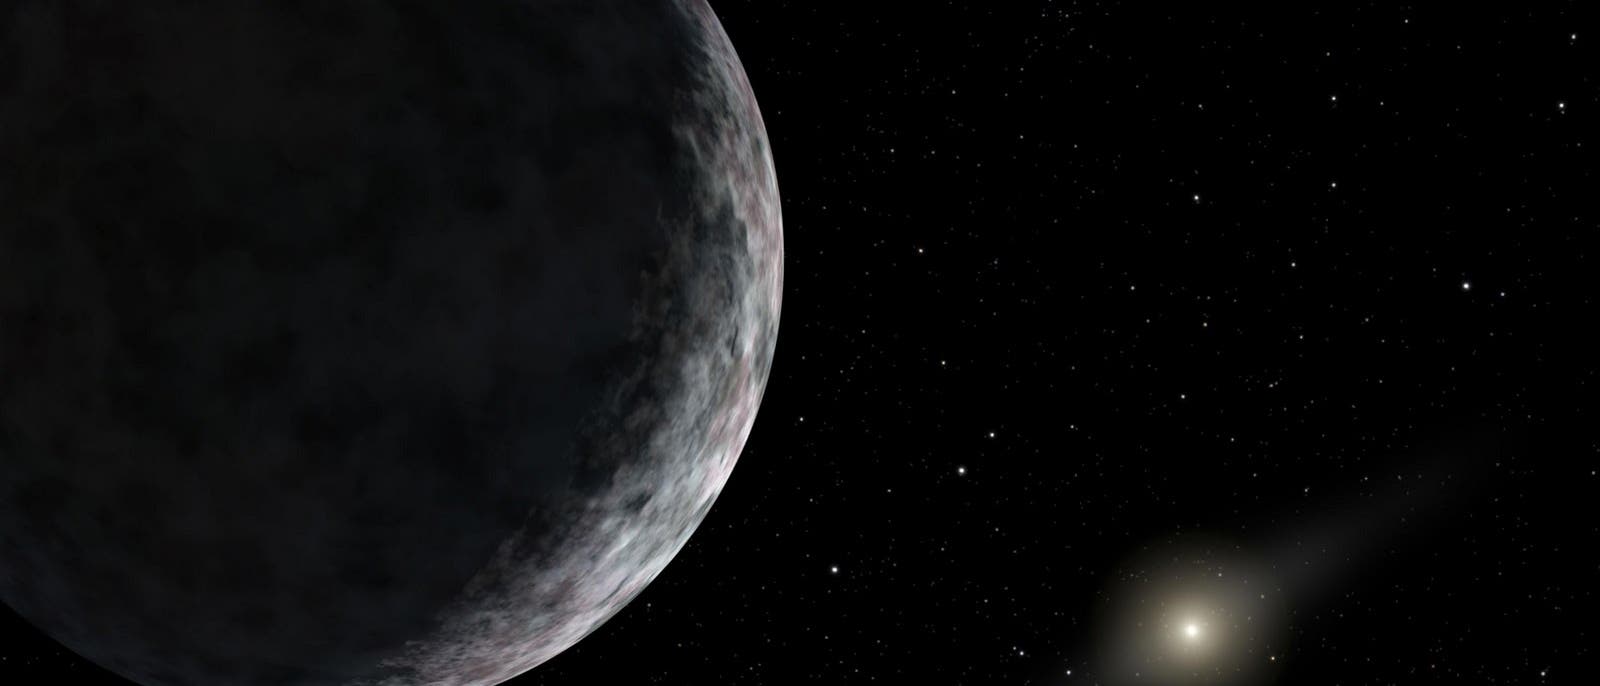 Diese künstlerische Darstellung zeigt den Zwergplaneten Eris, ein transneptunisches Objekt, das 2003 entdeckt wurde und dazu beigetragen hat, dass Pluto seinen Planetenstatus verlor.